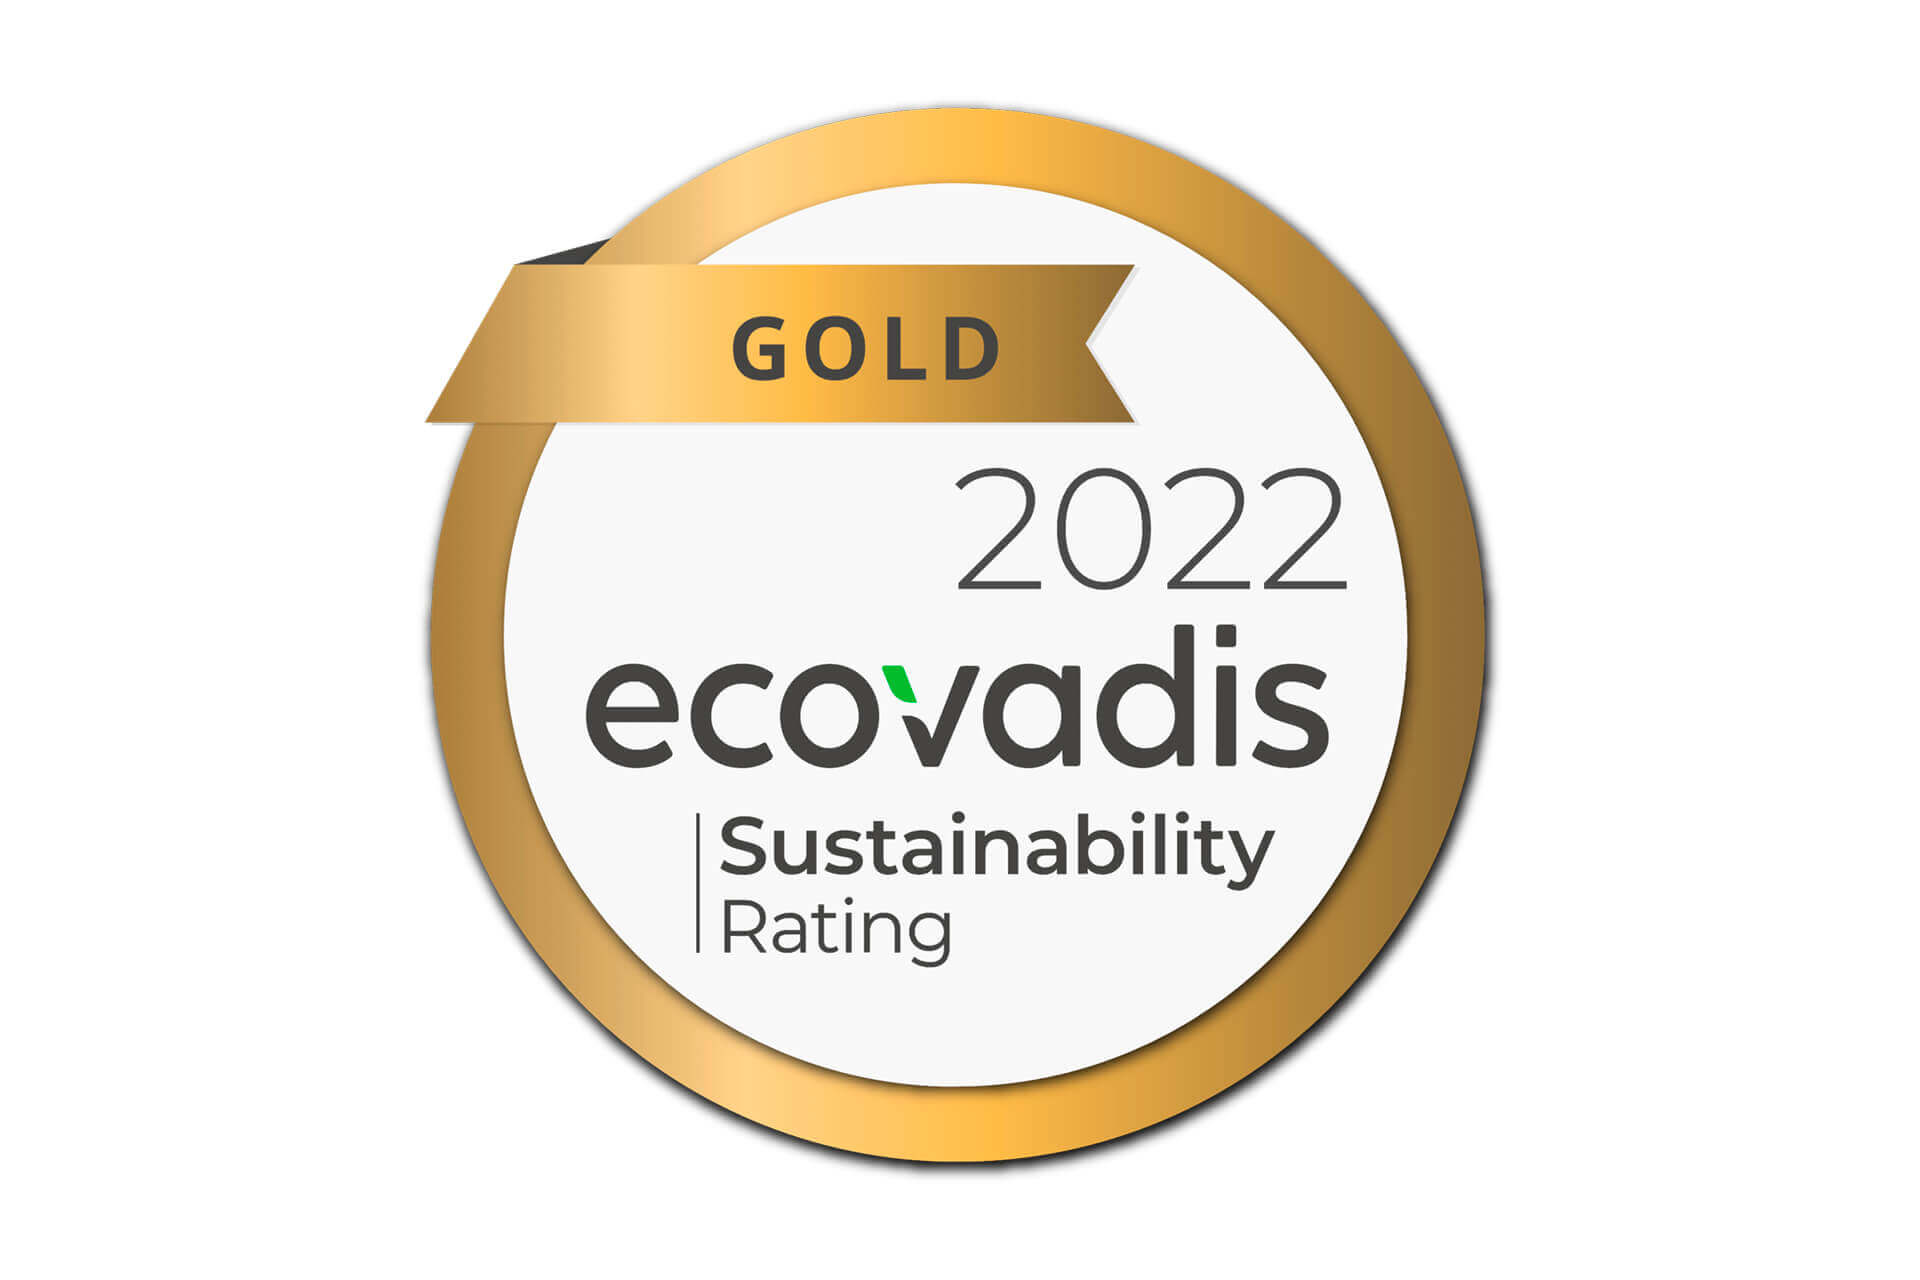 Mit dem Ecovadis Gold Rating 2022 belegt die Schreiner Group erneut ihre umfassenden Nachhaltigkeitsziele und -maßnahmen. Mehr Infos unter: www.schreiner-group.com/de/unternehmen/nachhaltigkeit/